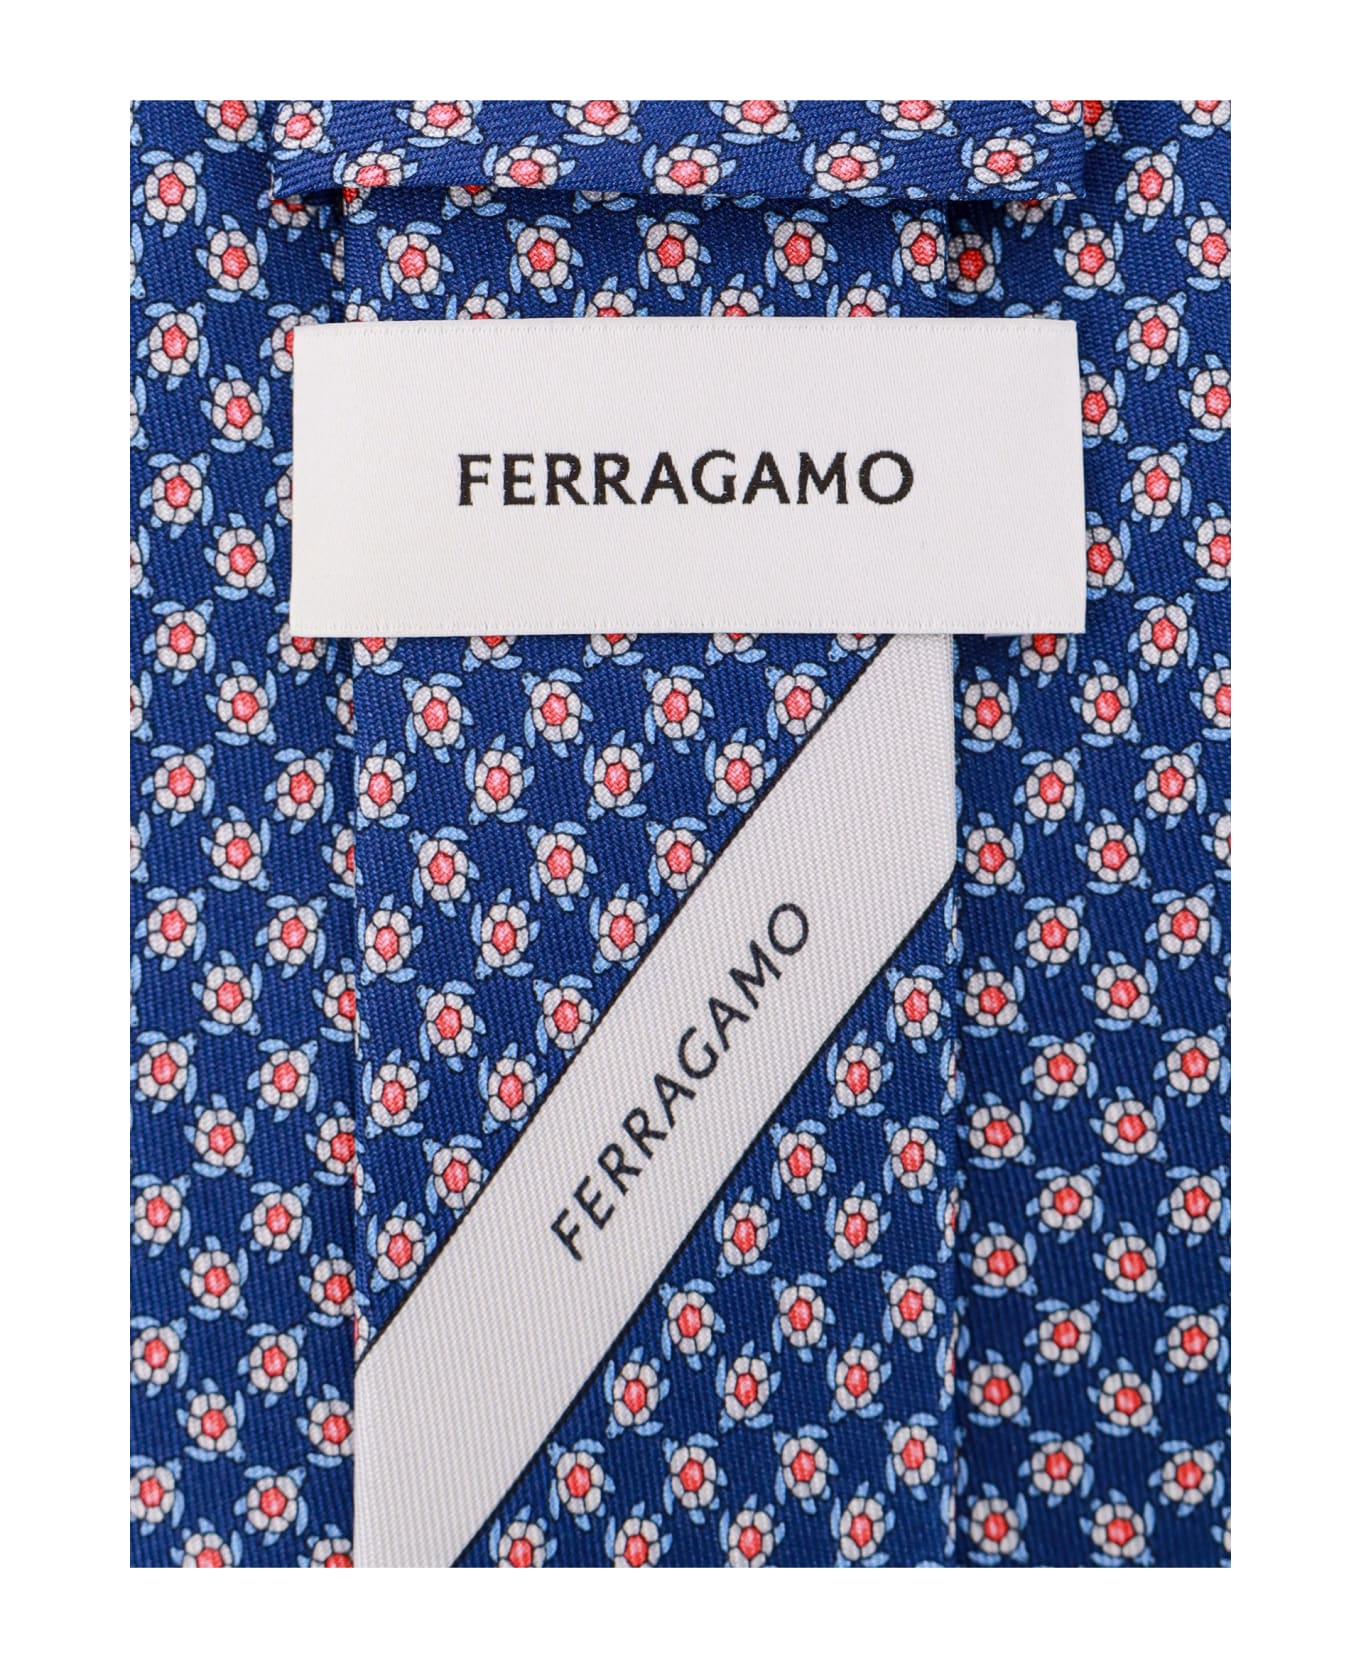 Ferragamo Tie - NAVY ネクタイ